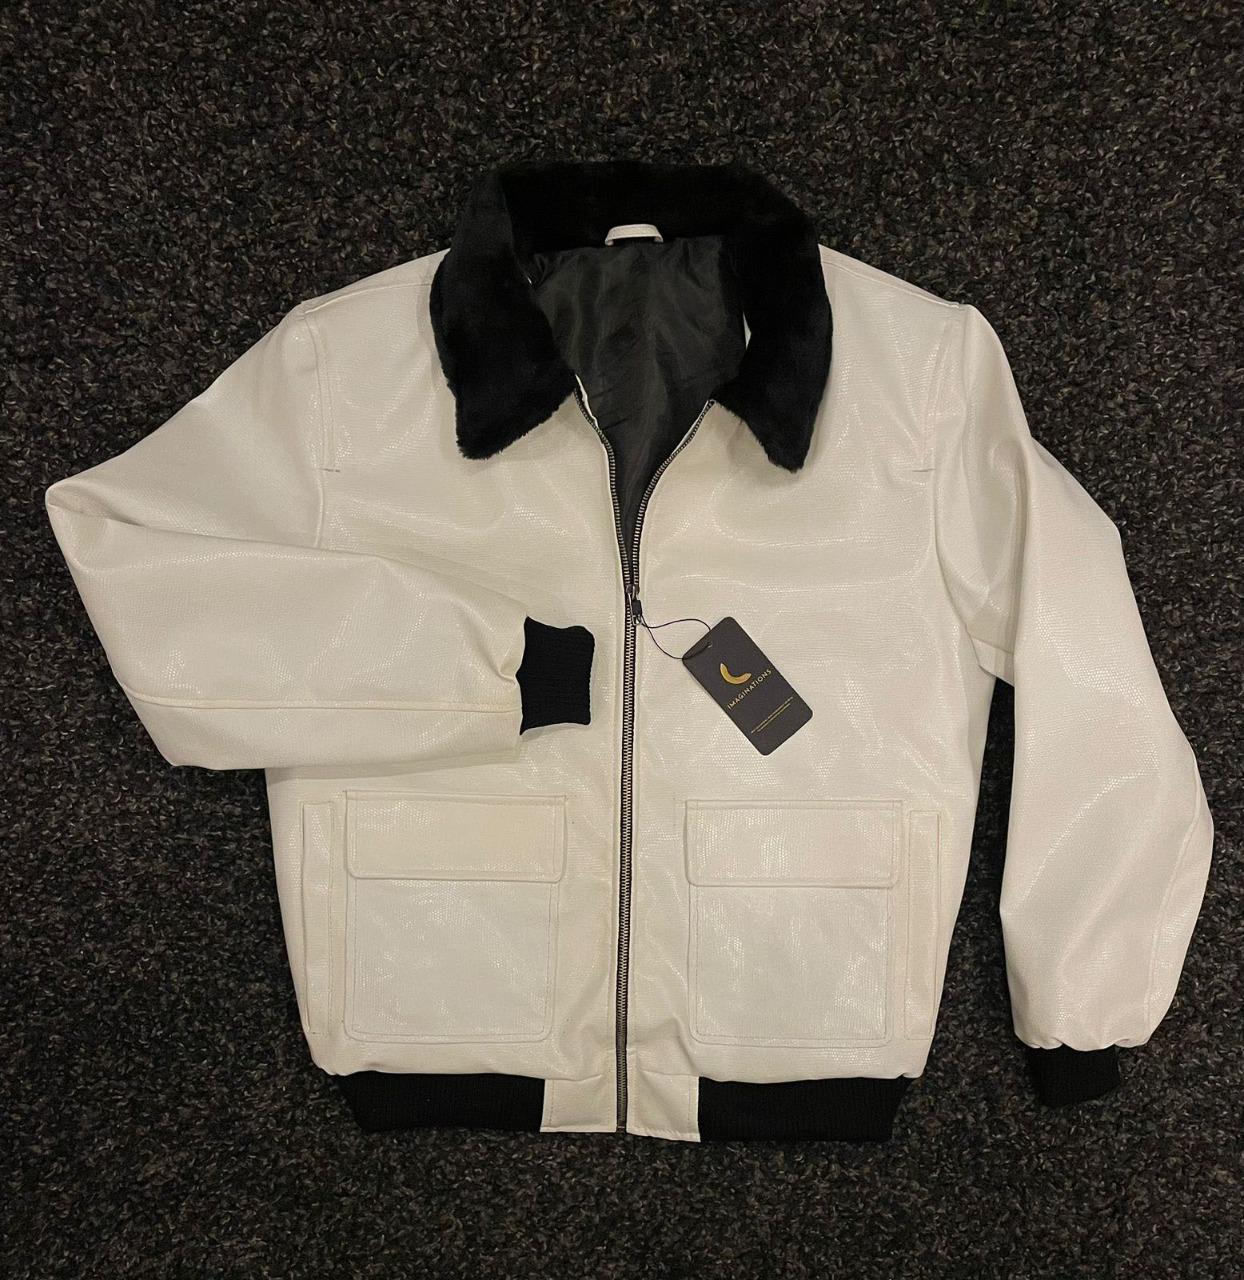 White Crocodile Leather Jacket